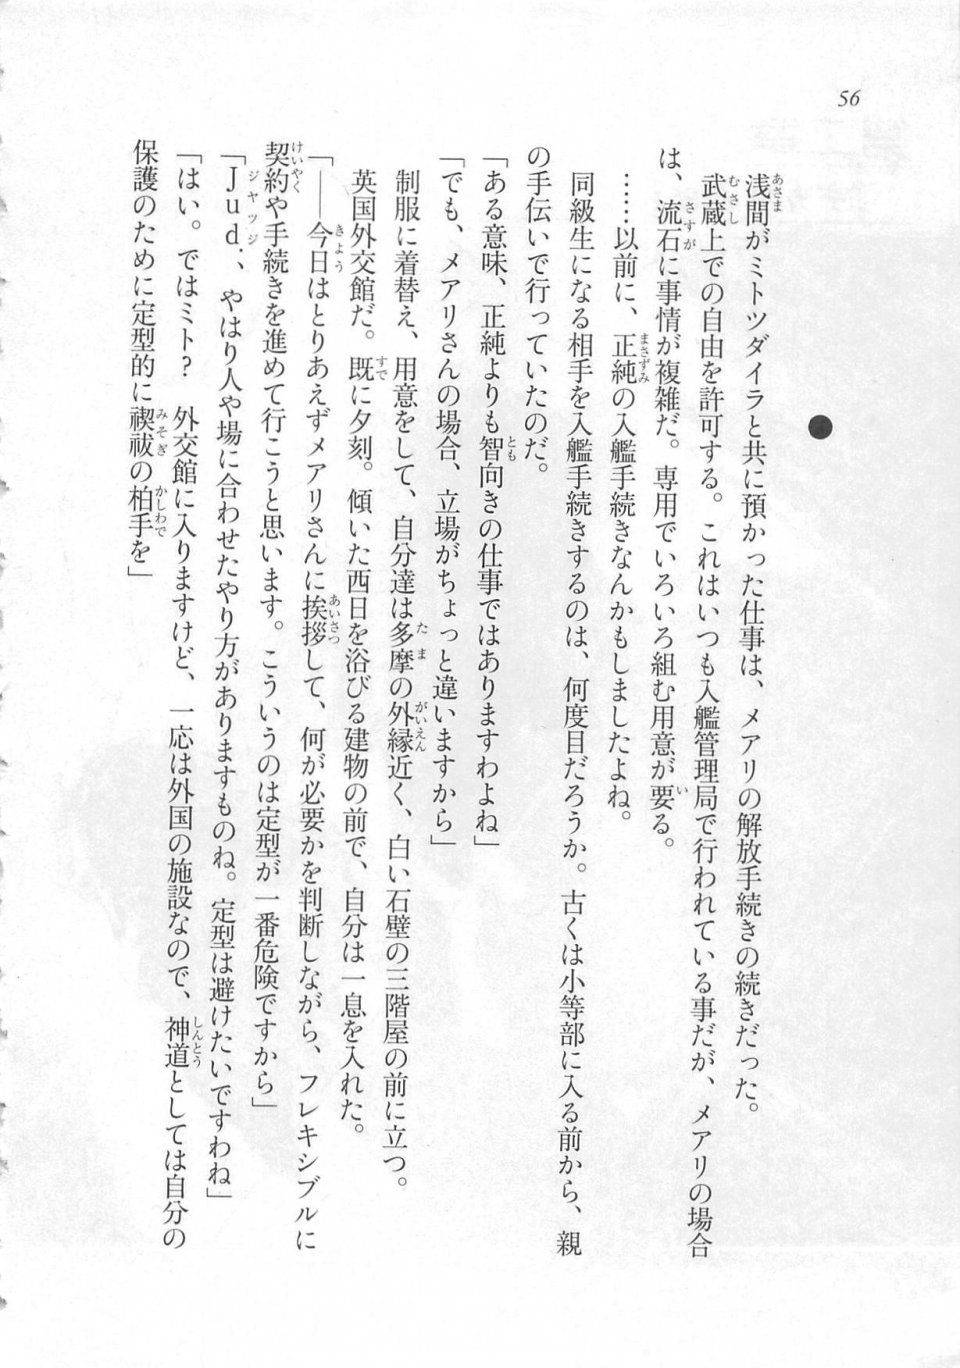 Kyoukai Senjou no Horizon LN Sidestory Vol 3 - Photo #60